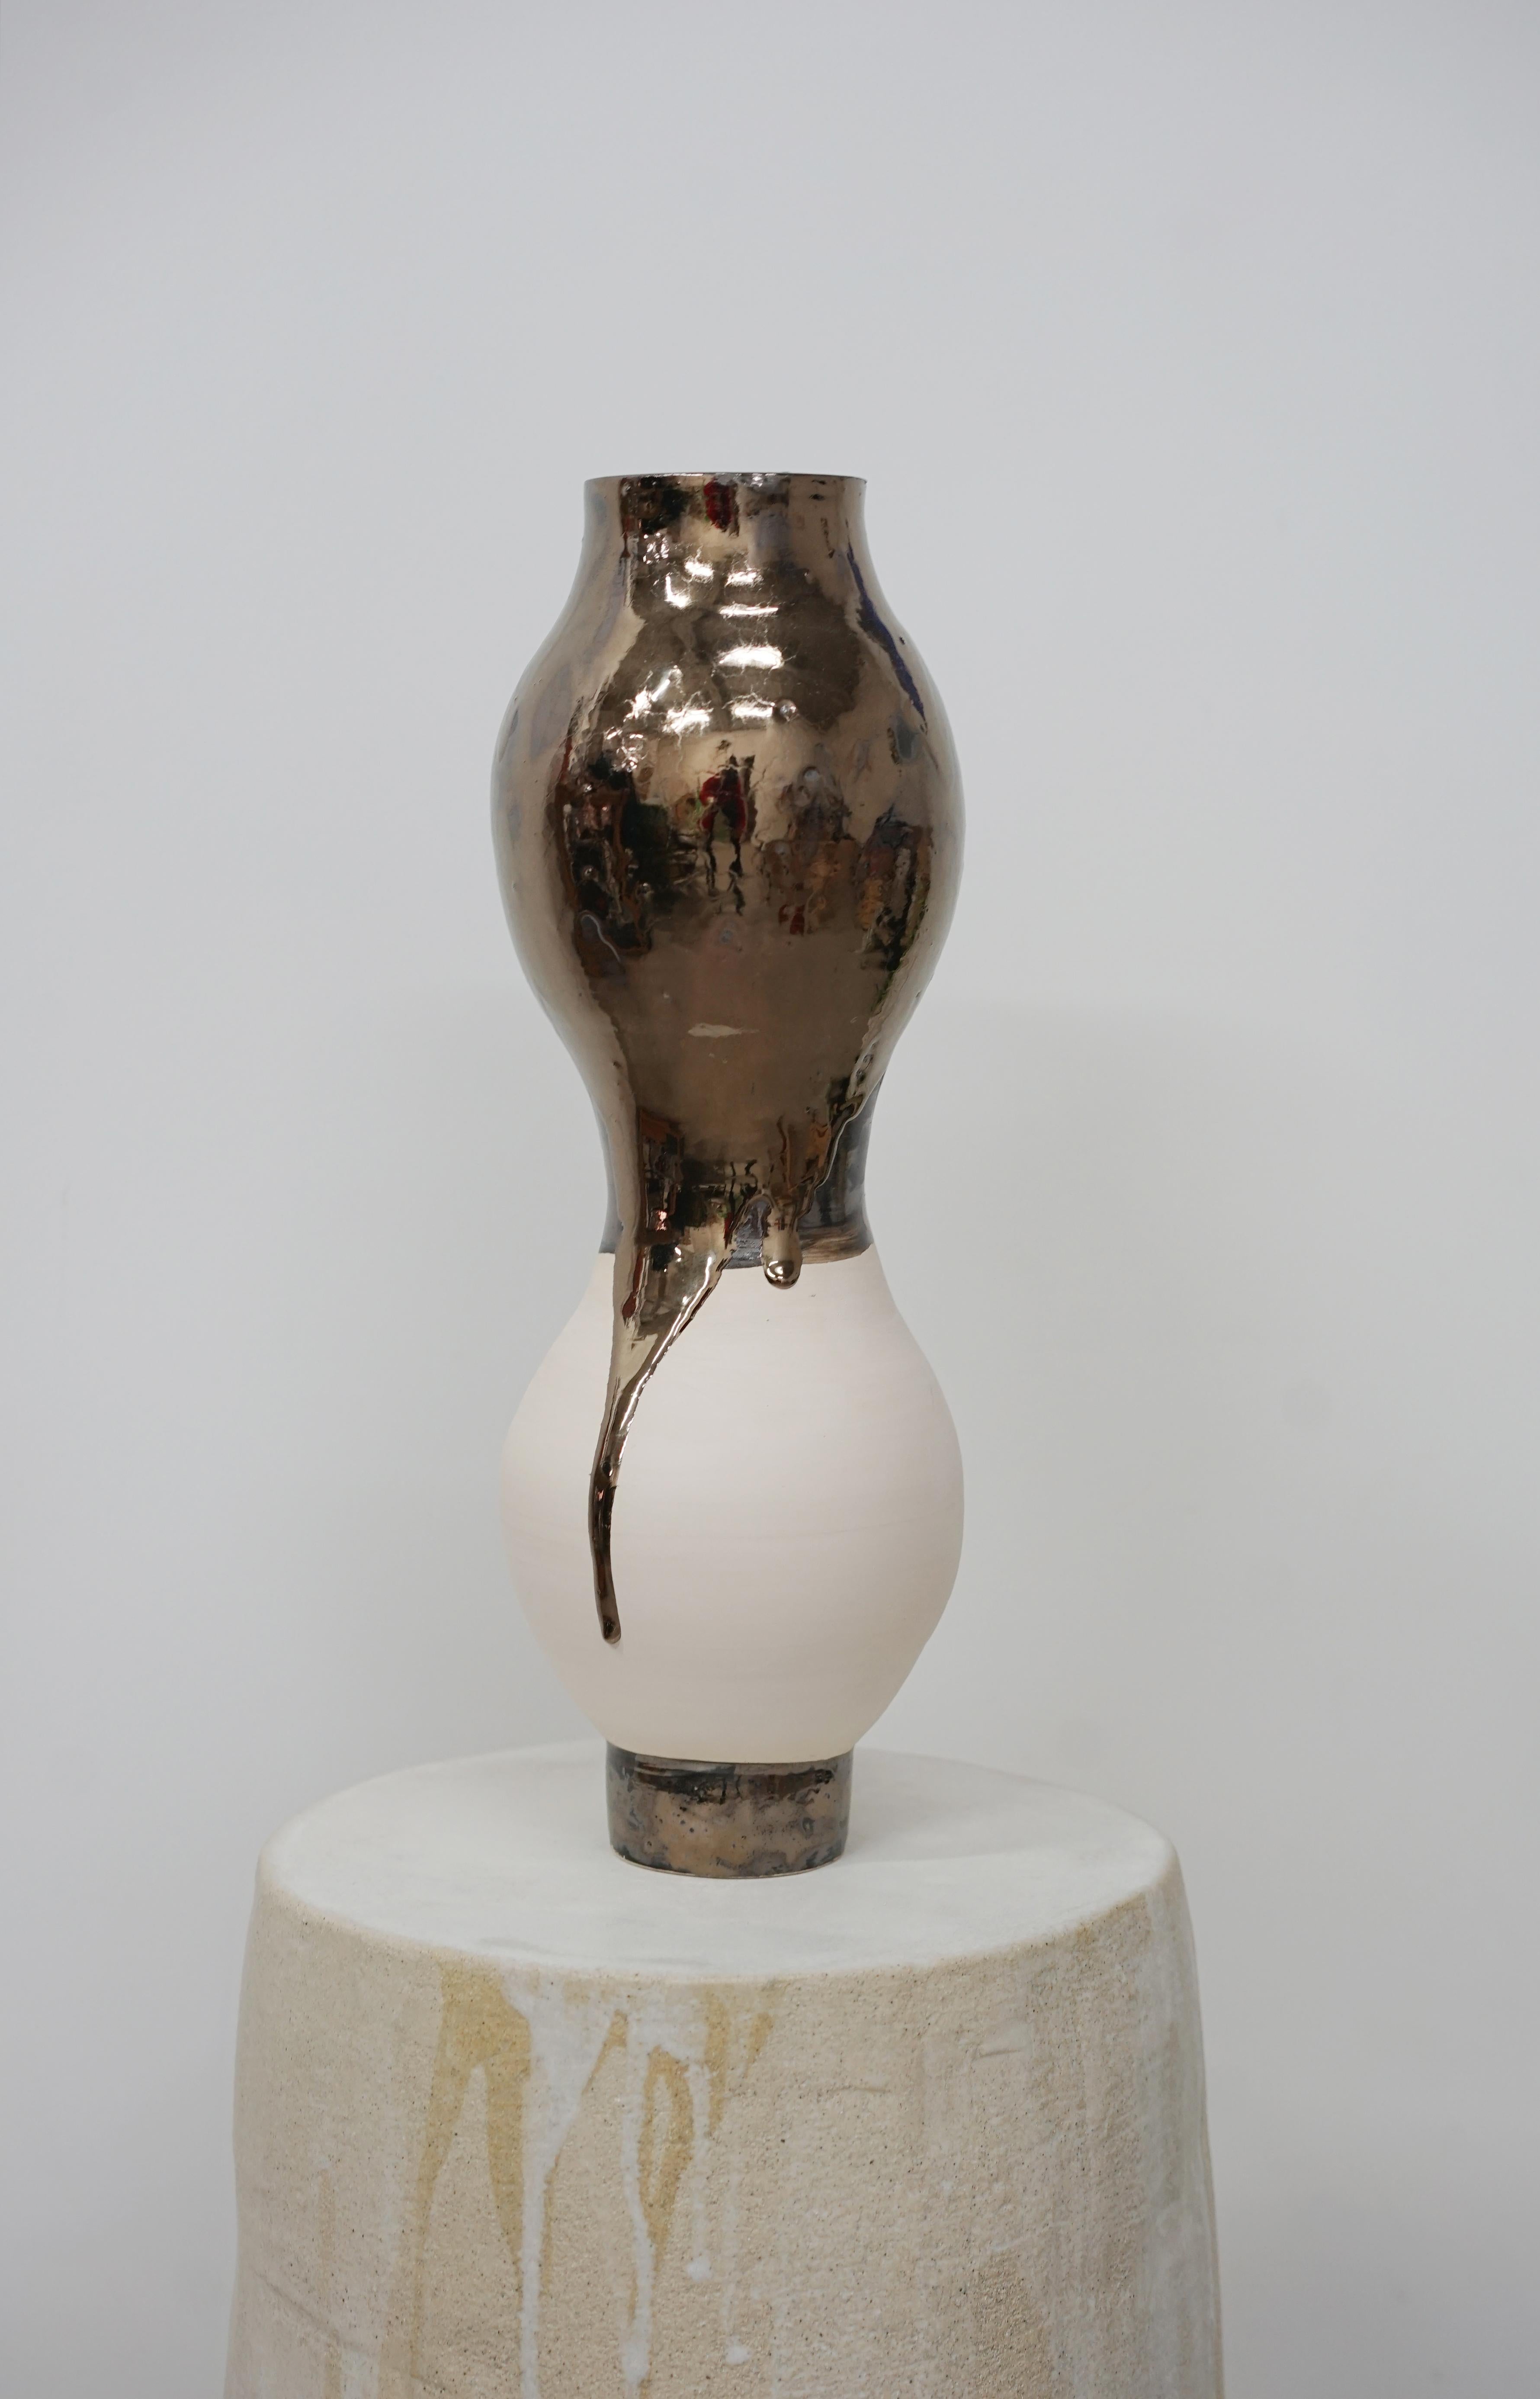 OTOMA_05 Vase von Emmanuelle Roule
Einzigartiges Stück.
Abmessungen: Ø 8 x H 38 cm.
MATERIALIEN: Steingut.

Vase aus weißem Steingut, teilweise glasiert. Nicht wasserdicht und für niedrige Temperaturen geeignet. Bitte kontaktieren Sie uns.

2007